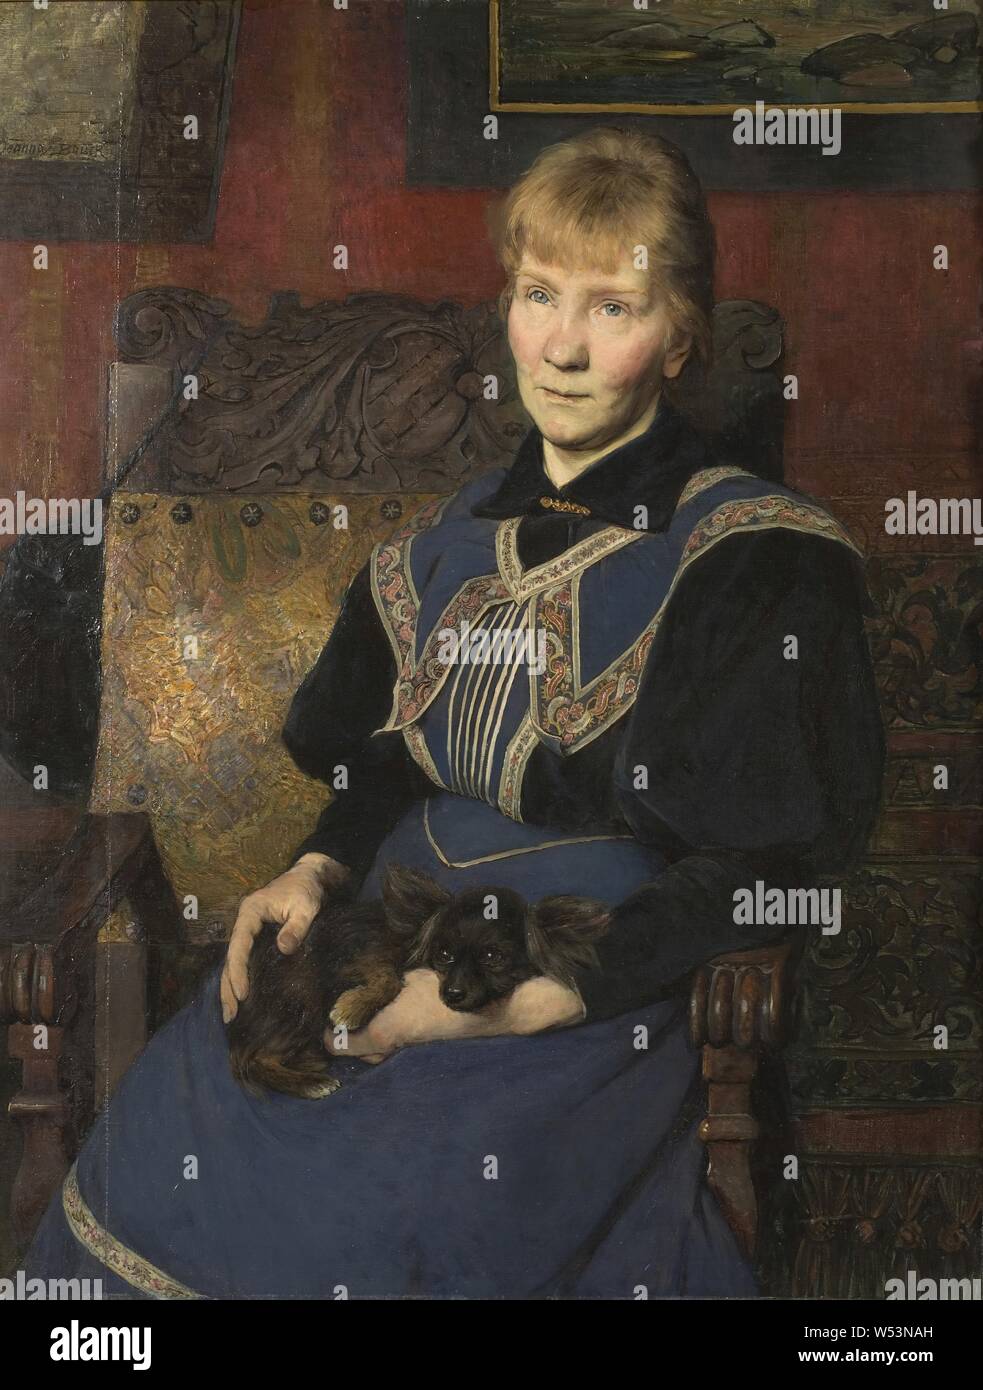 Jeanna Bauck, die Schwester des Malers, die Schwester des Künstlers, Malerei, 1900, Öl auf Leinwand, Höhe 102 cm (40,1 Zoll), Breite 81 cm (31,8 Zoll), unterzeichnet. Stockfoto